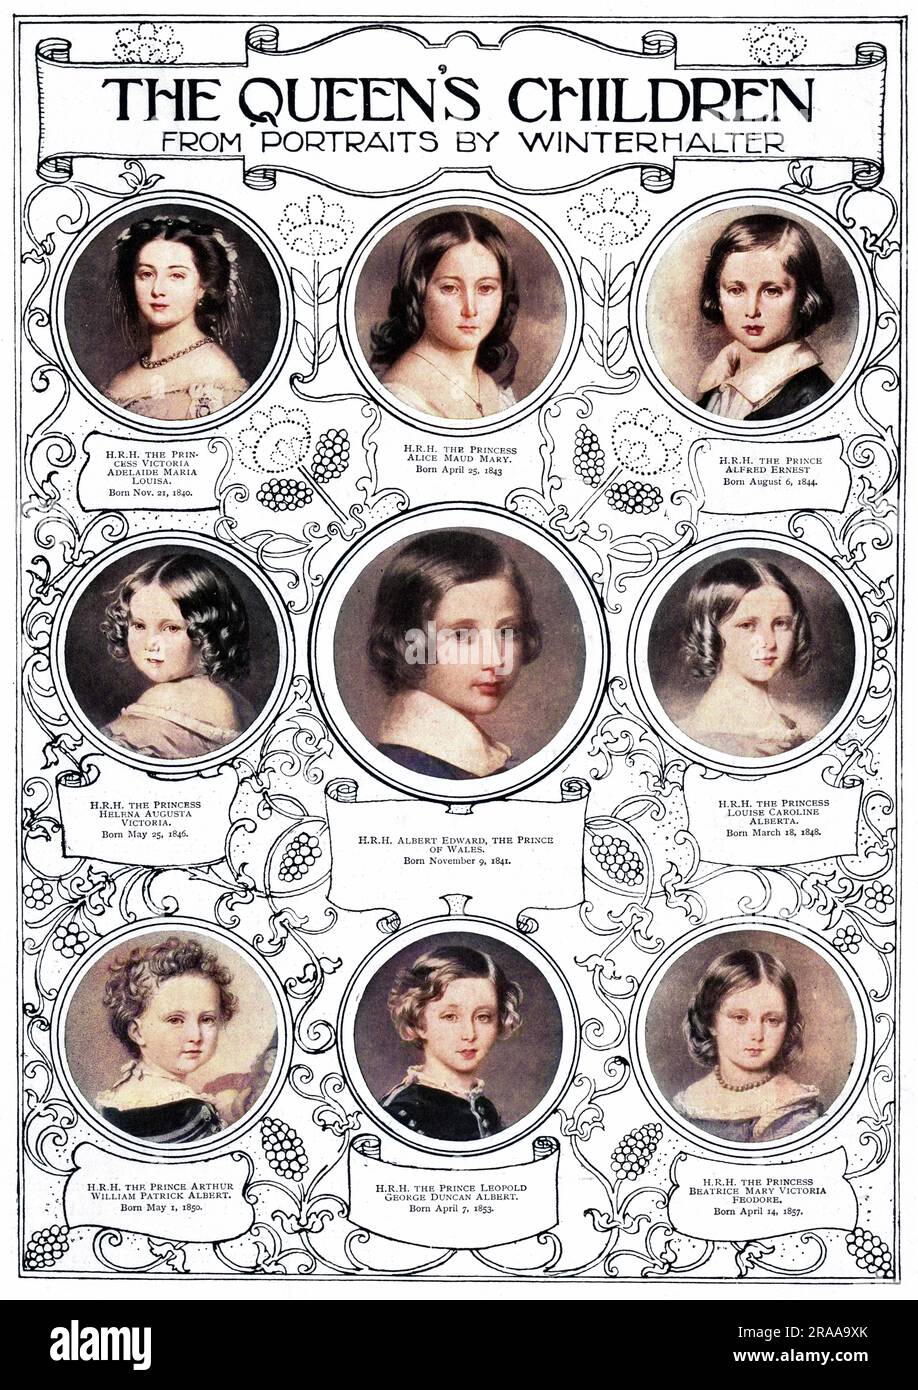 Les neuf enfants de la reine Victoria, à partir de portraits du peintre allemand Franz Xaver Winterhalter. De gauche à droite : la princesse Vicky de Grande-Bretagne (1840-1901), la princesse Alice (1843-78), le prince Alfred 'Affie' (1844-1900), la princesse Helena 'Lenchen' (1846-1923), le prince Edward de Galles (1841-1910), la princesse Louise (1848-1939), le prince Arthur, le duc de Connaught (1850-1942), le prince Léopold Beatrice (1853 1944-1884) et la princesse Leopold (1857). Banque D'Images